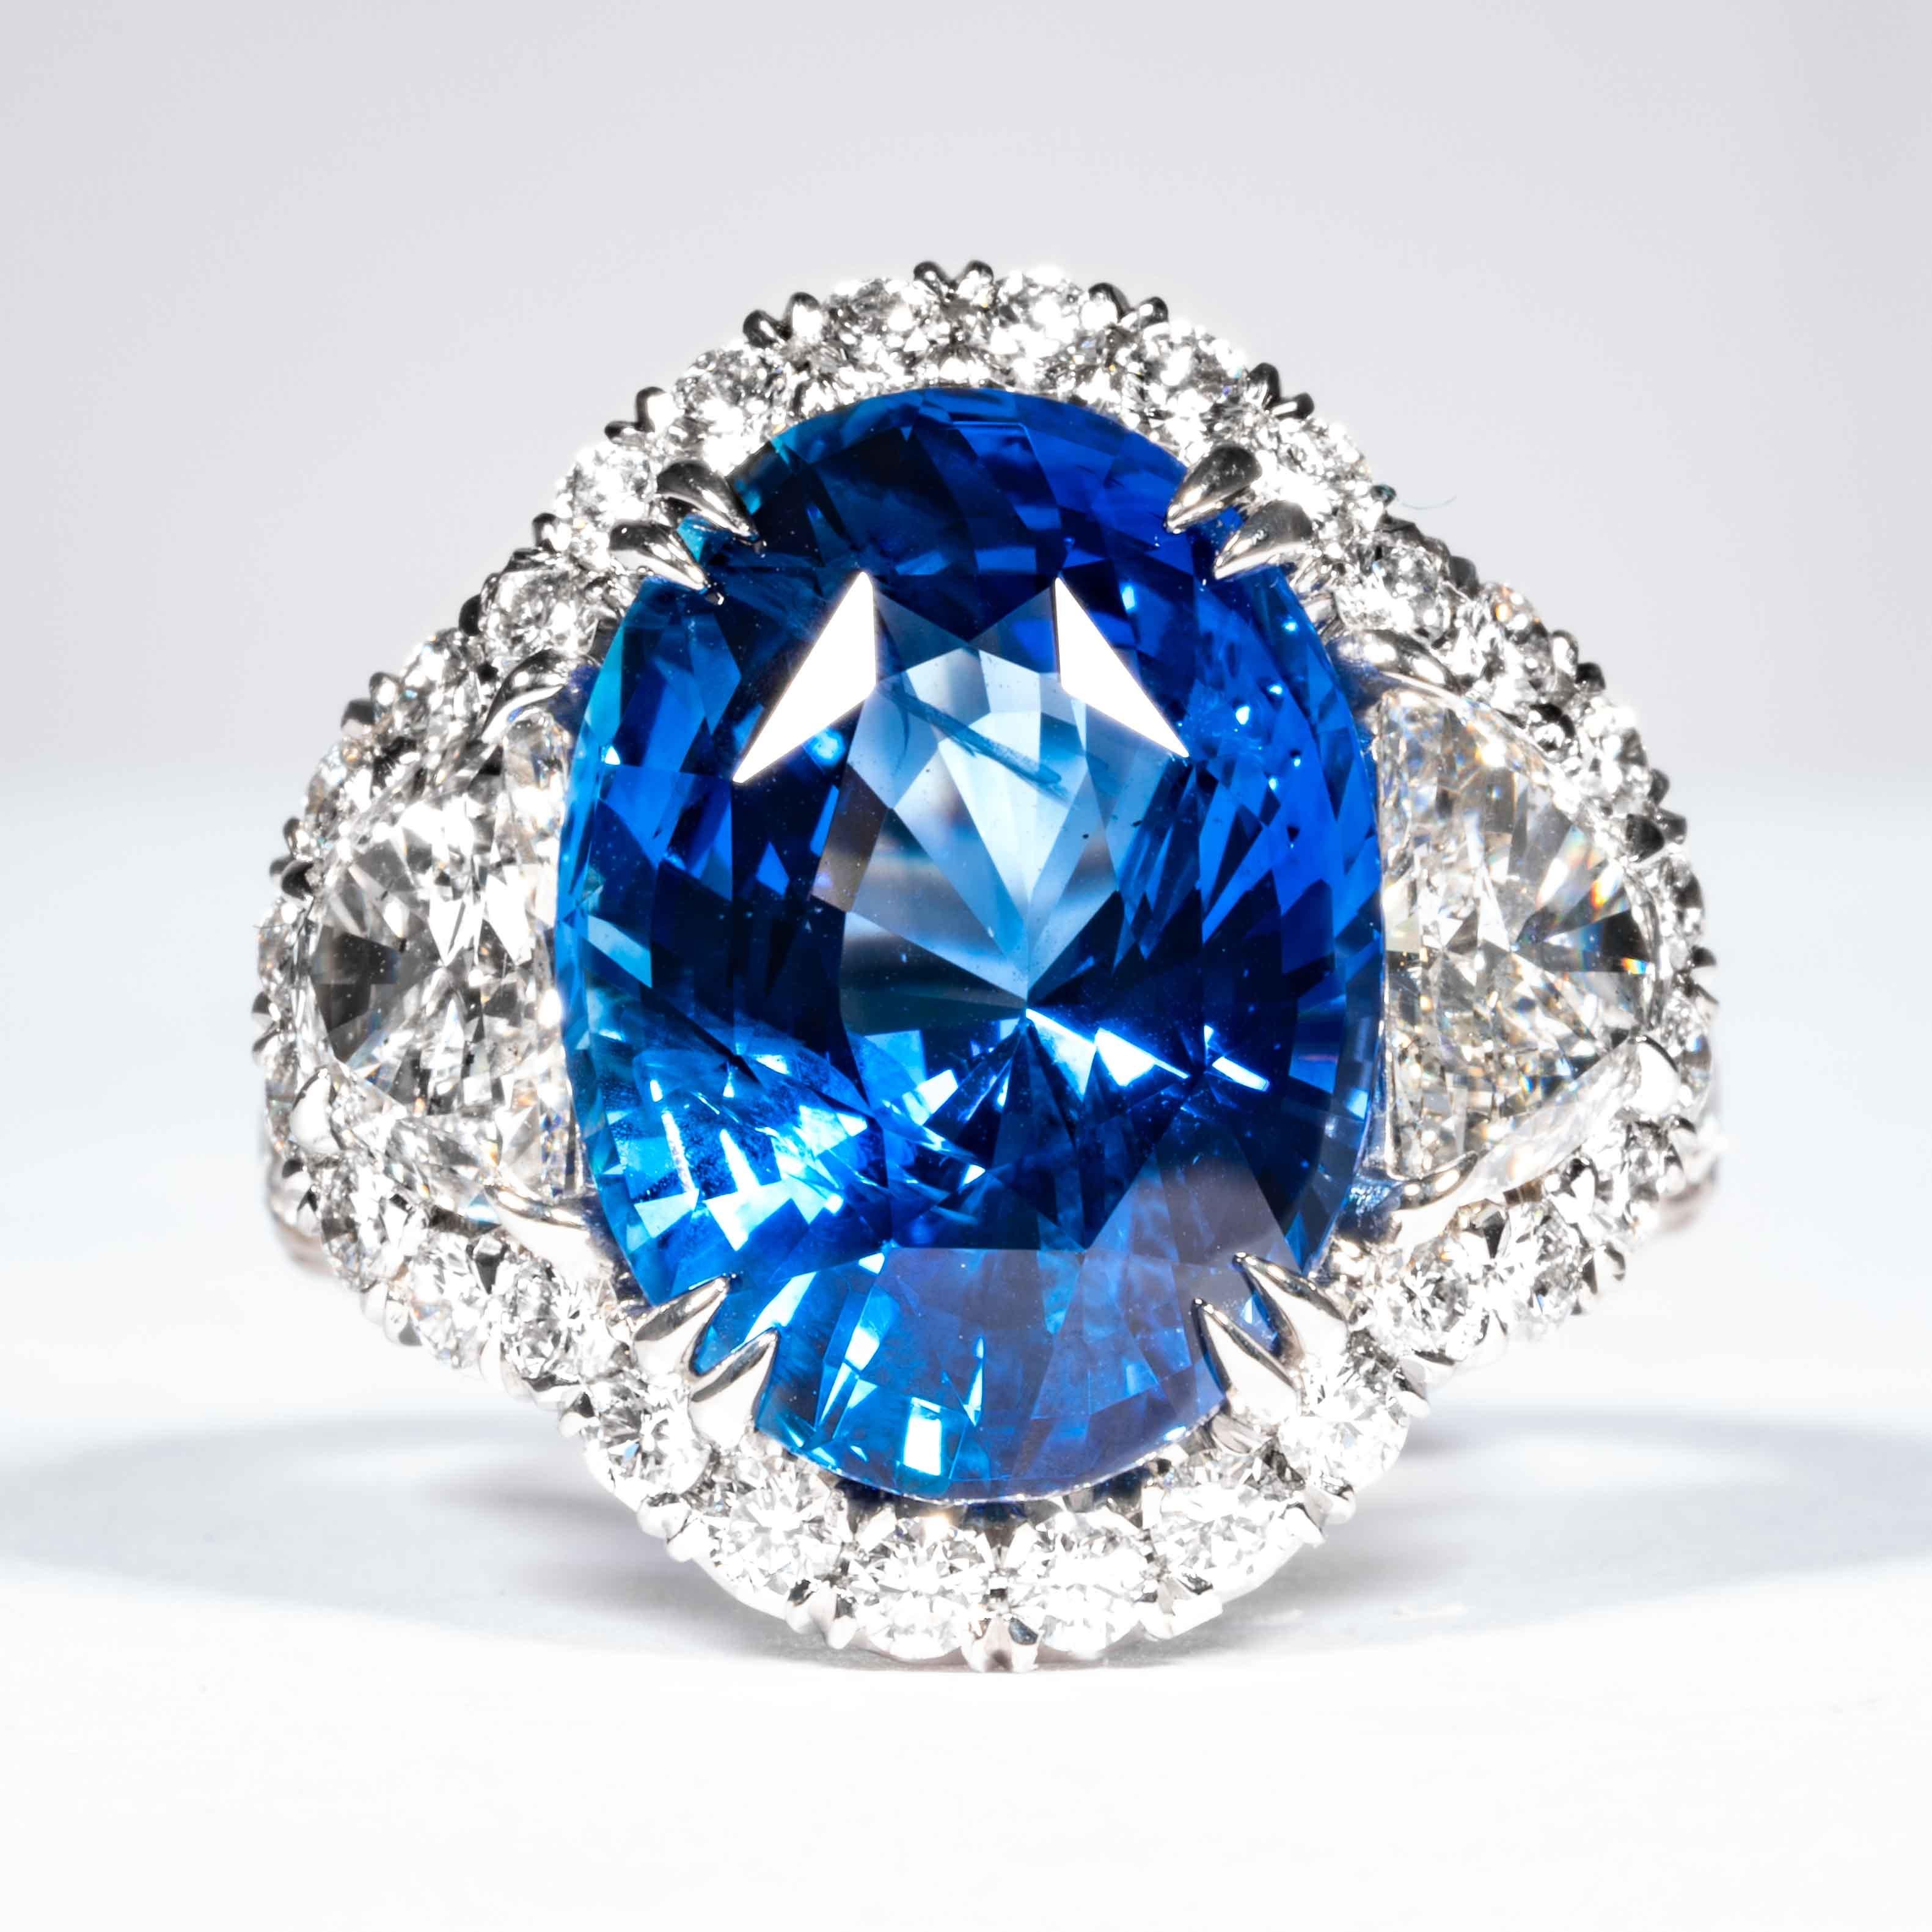 Dieser 3-Stein-Ring mit Saphiren und Diamanten wird von Shreve, Crump & Low angeboten.  Dieser blaue, oval geschliffene Saphir ist in einem handgefertigten, einzigartigen Platinring von Shreve, Crump & Low gefasst und besteht aus einem